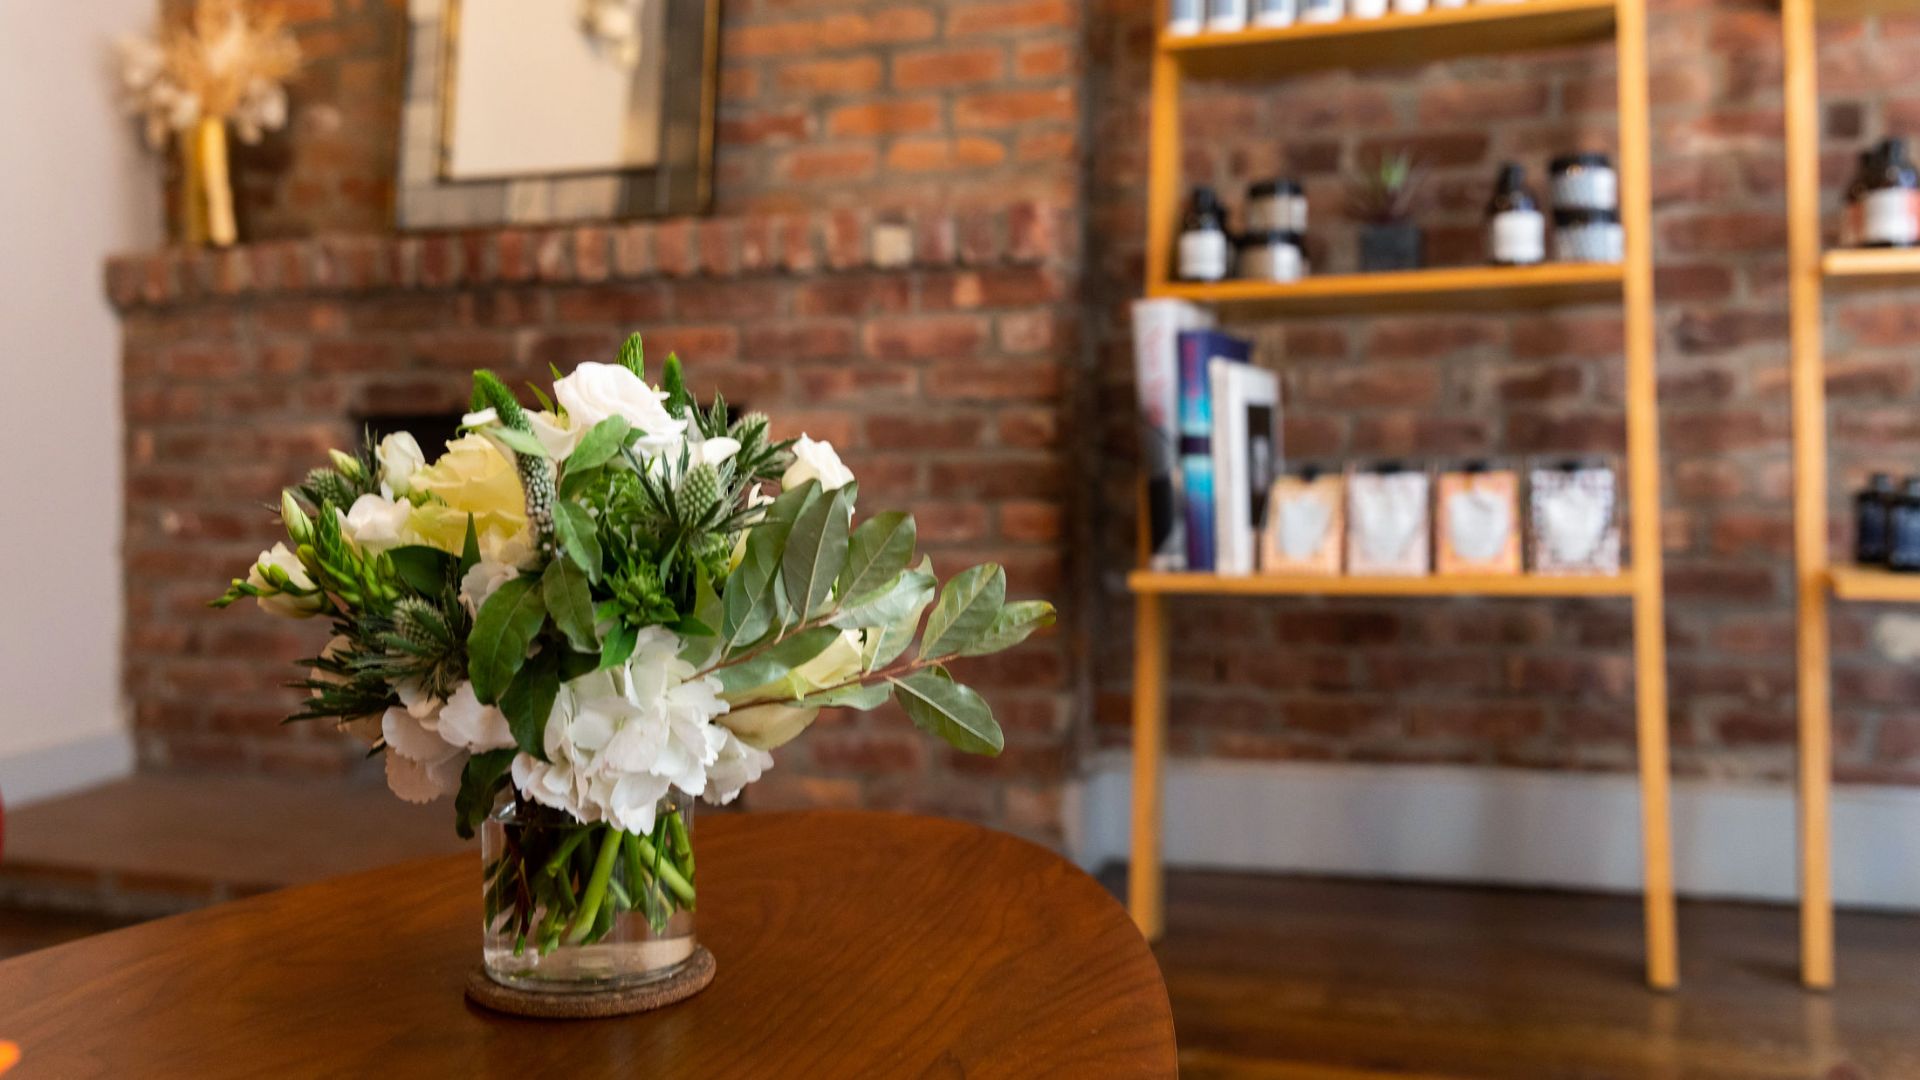 West Village salon reception area with floral arrangement